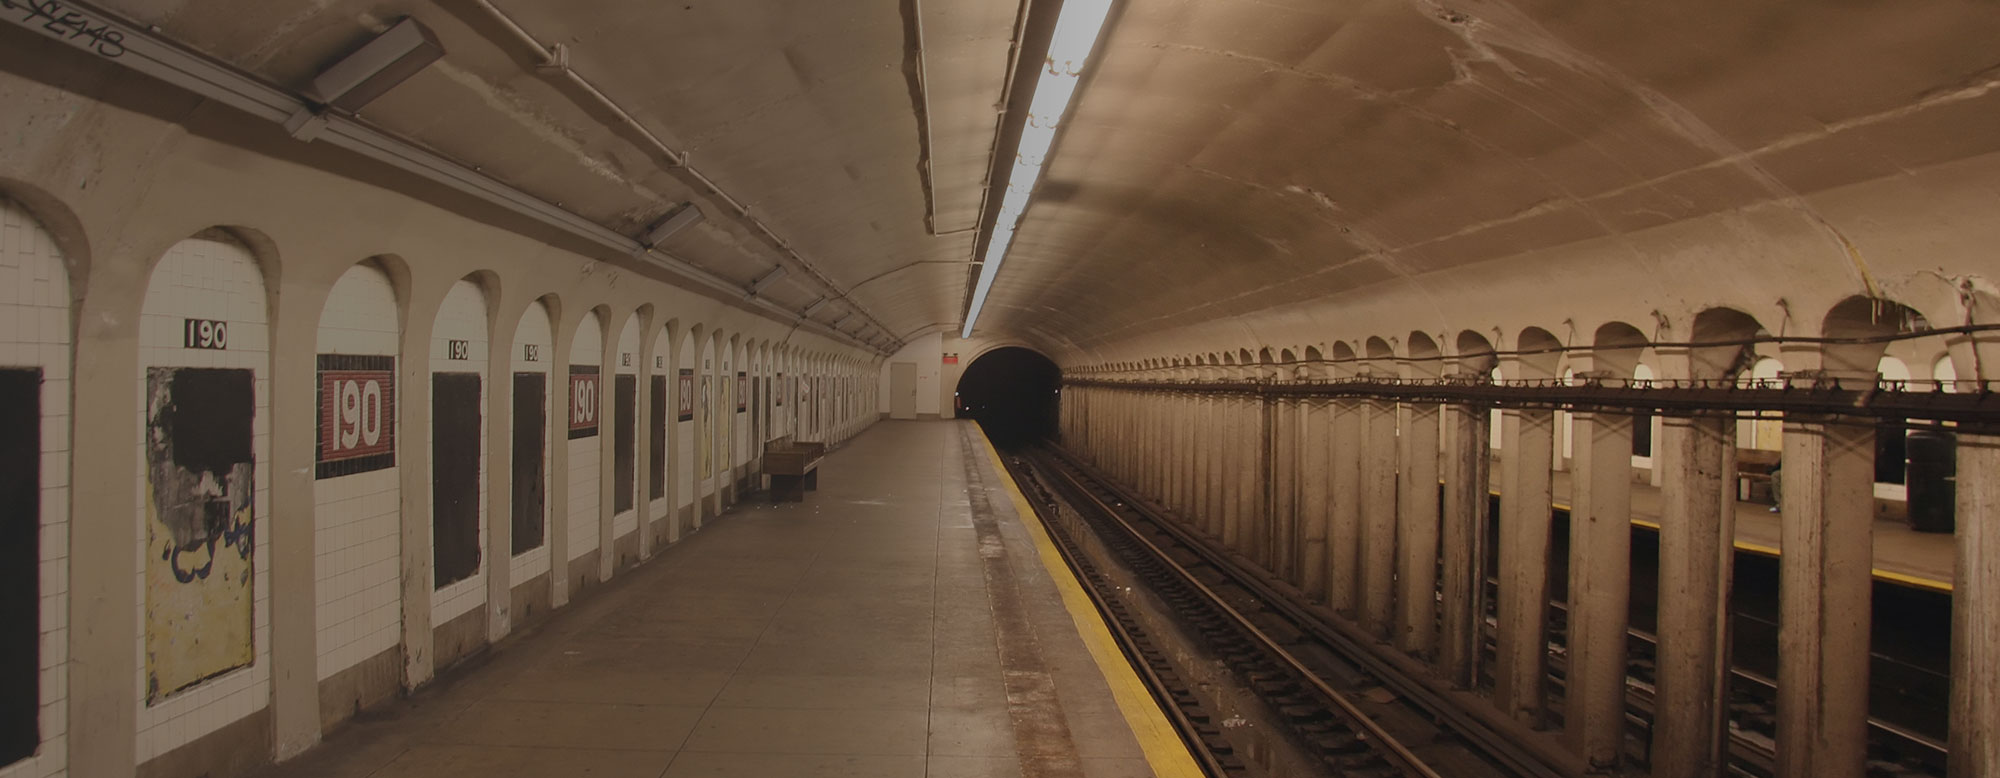 Abandoned subway